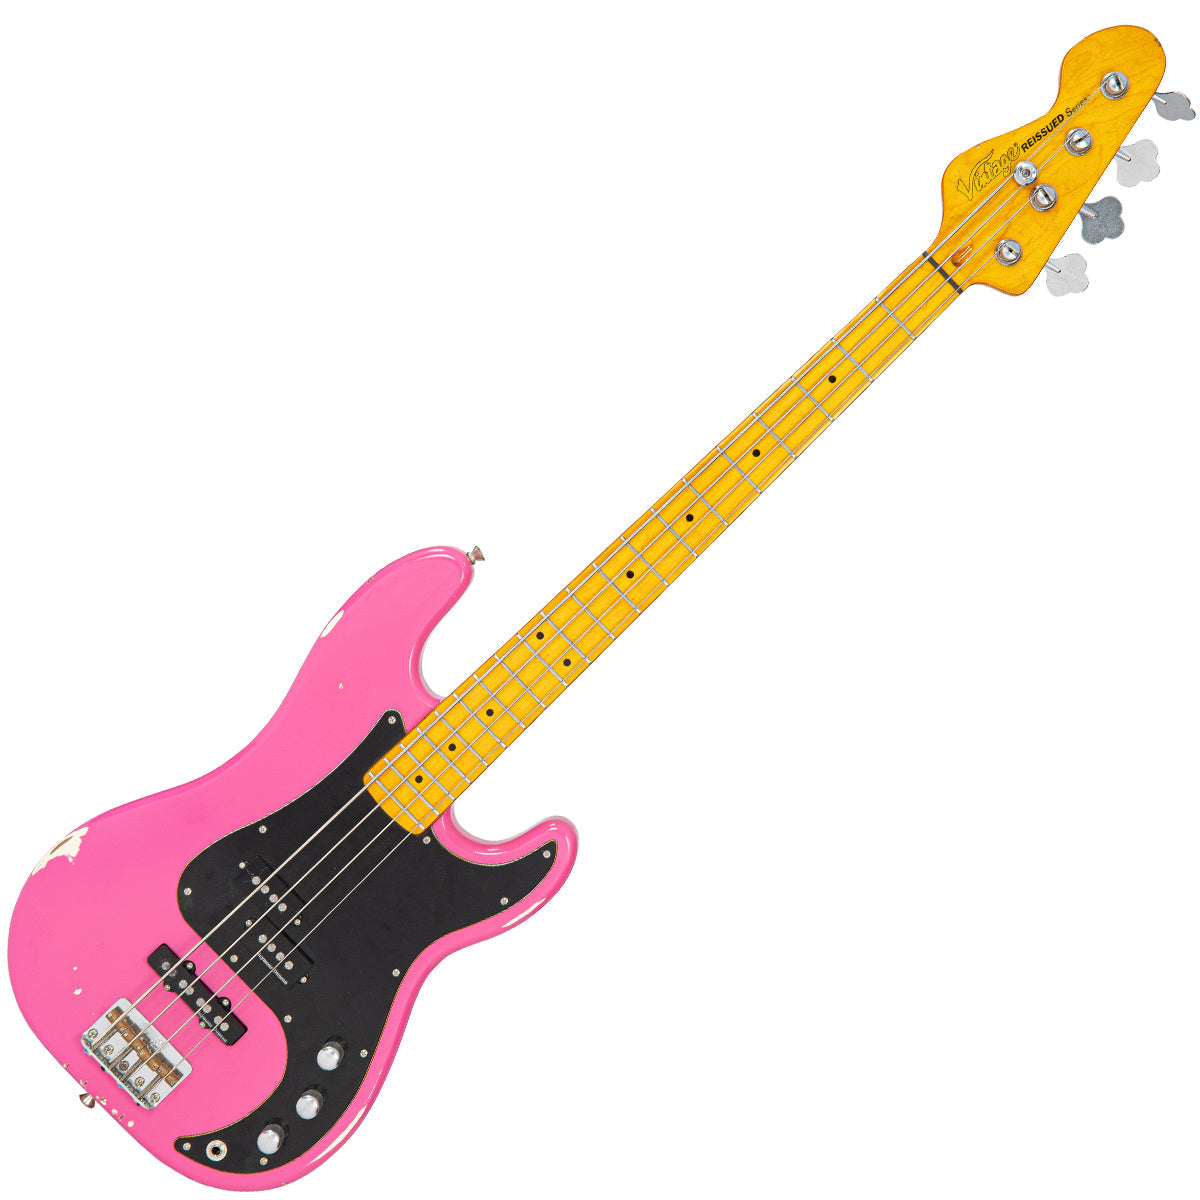 SOLD - Vintage V42 ProShop Custom ~ Distressed Bubblegum Pink, Electric Guitars for sale at Richards Guitars.